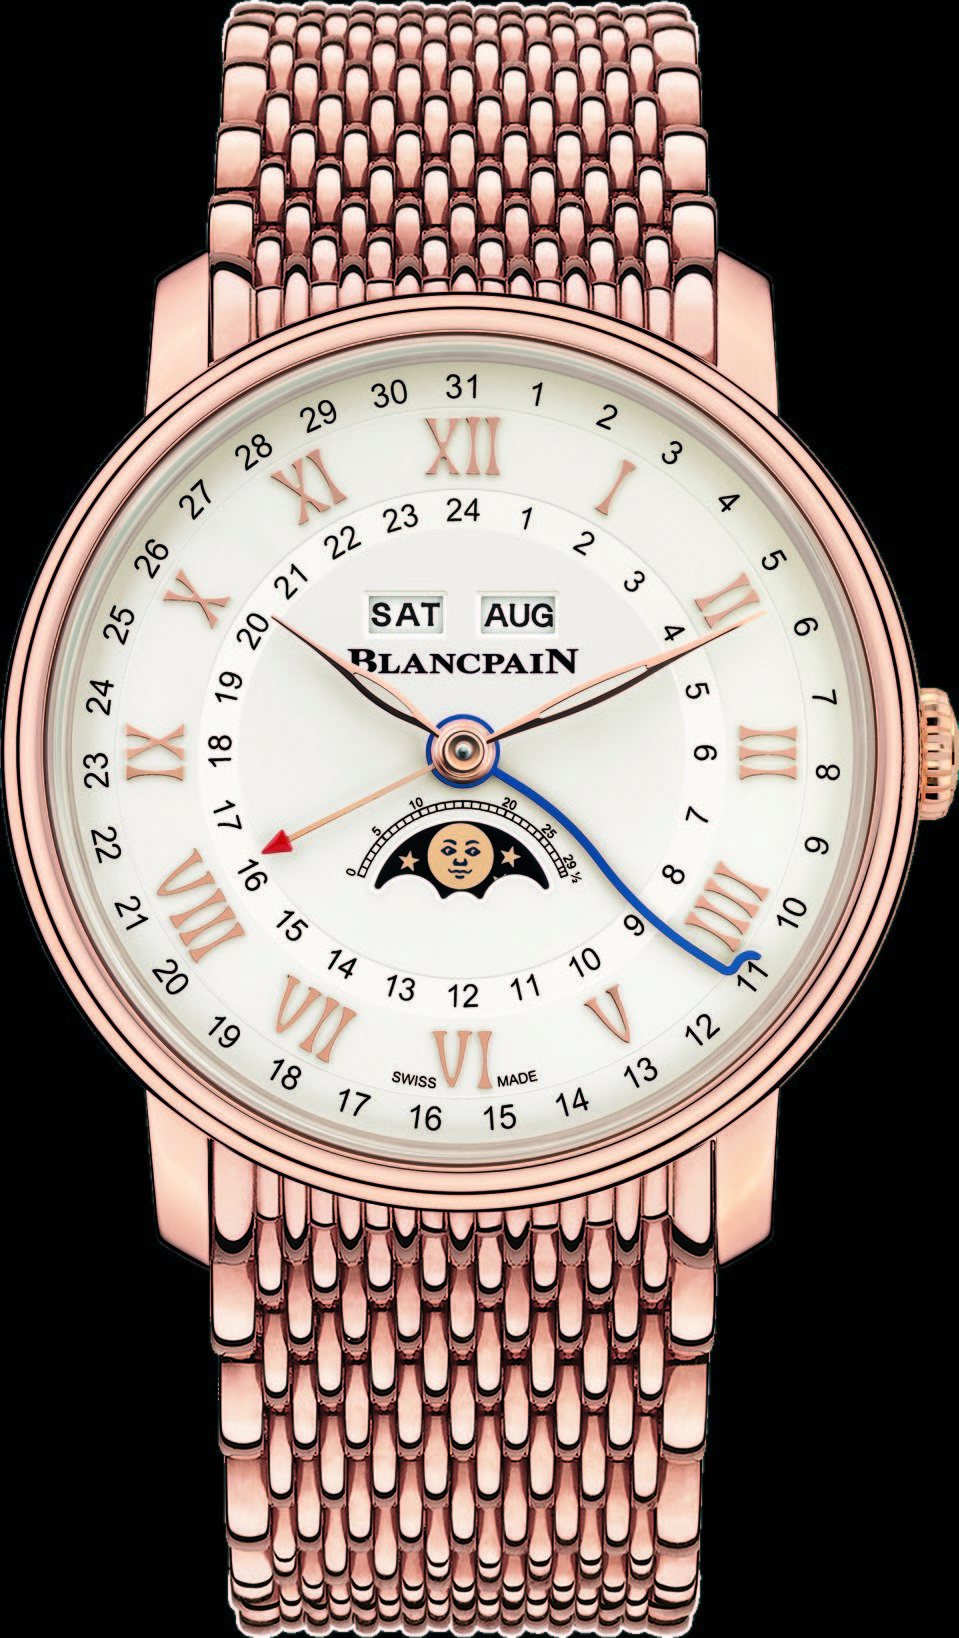 blancpain-villeret-quantie_me-complet-gmt-watch-04-e1519177030130.jpg